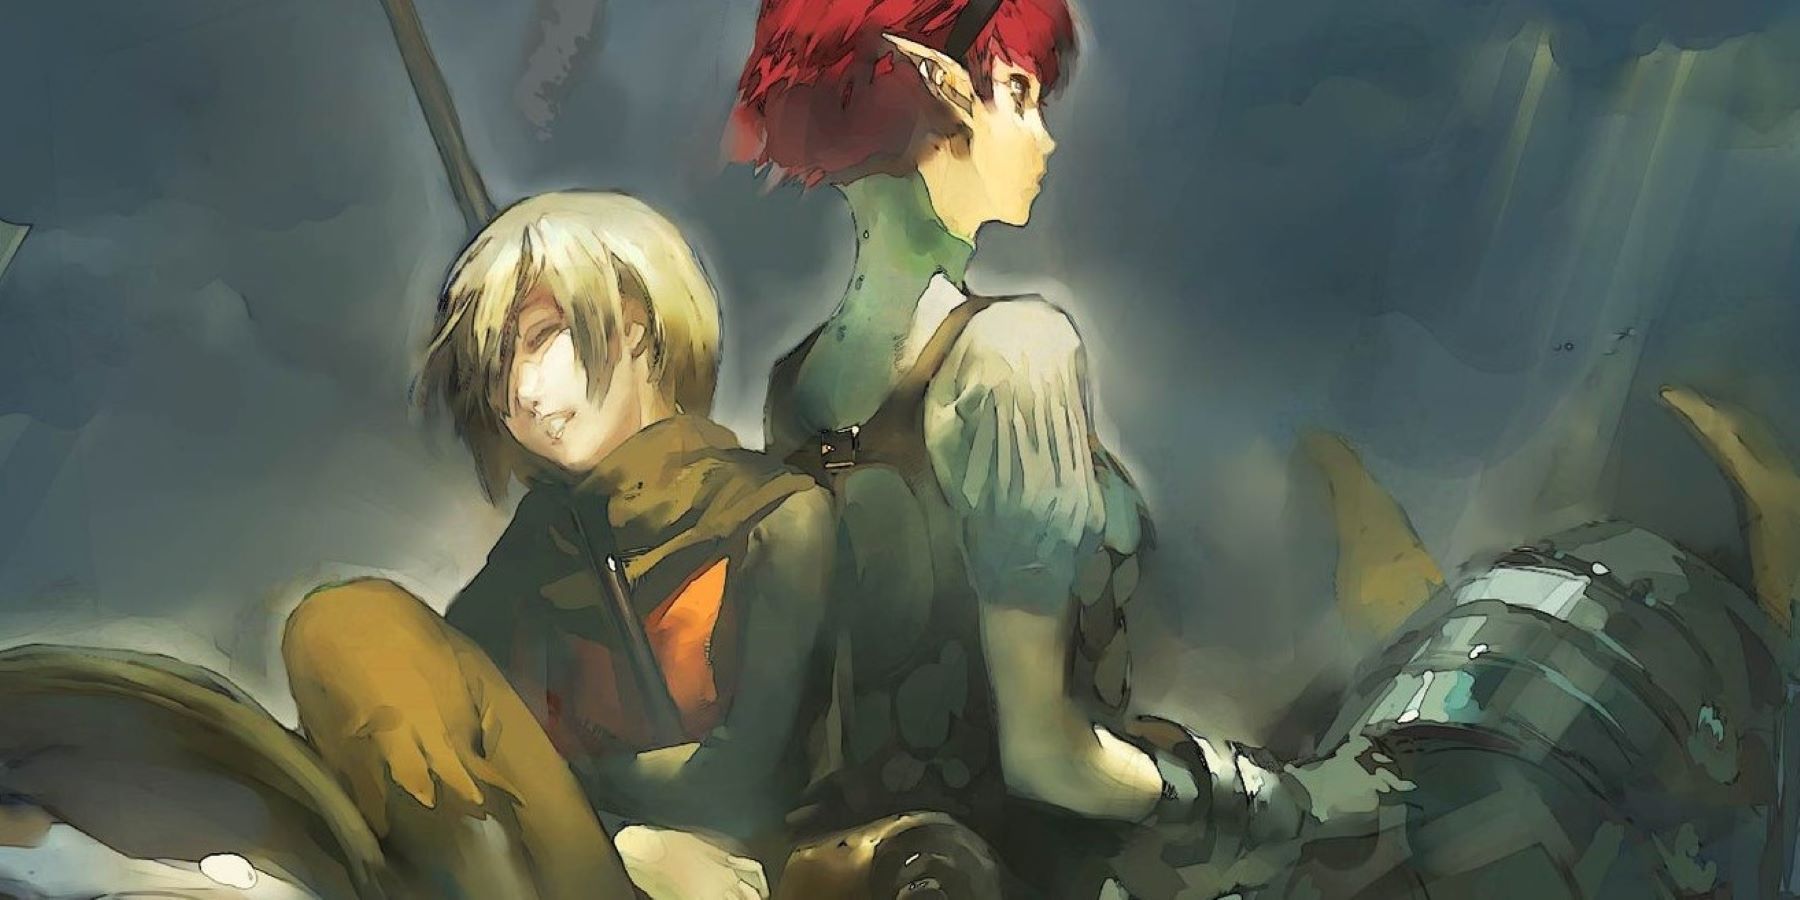 Концепт-арт для Project Re Fantasy, изображающий рыжеволосого рыцаря и блондина верхом на лошади под облачным небом.